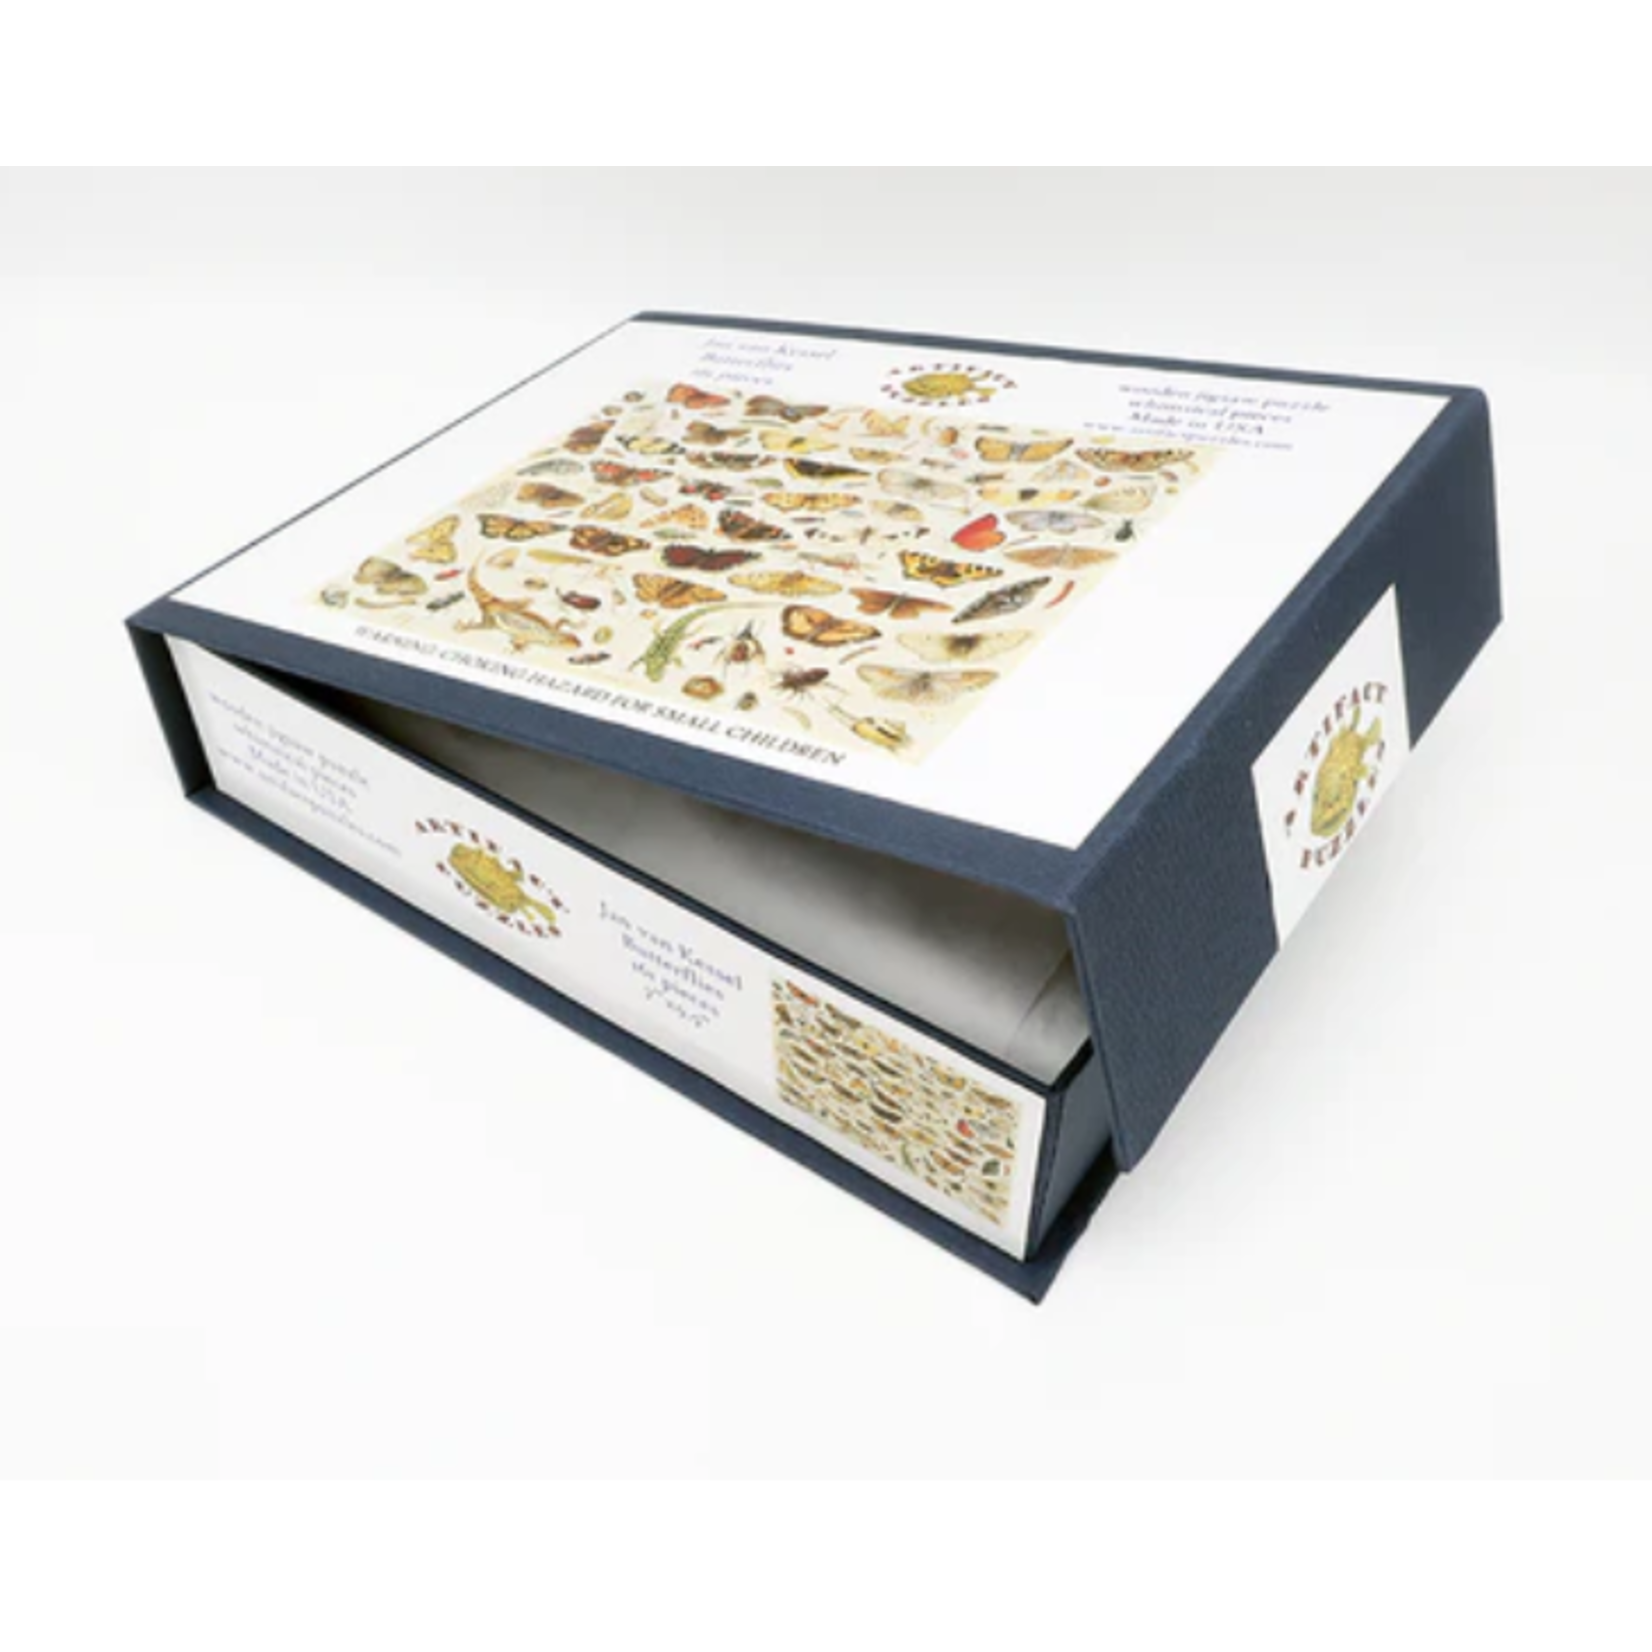 Artifact Puzzles Butterflies by Jan van Kessel, 161-Piece Wooden Jigsaw Puzzle  by Artifact Puzzles